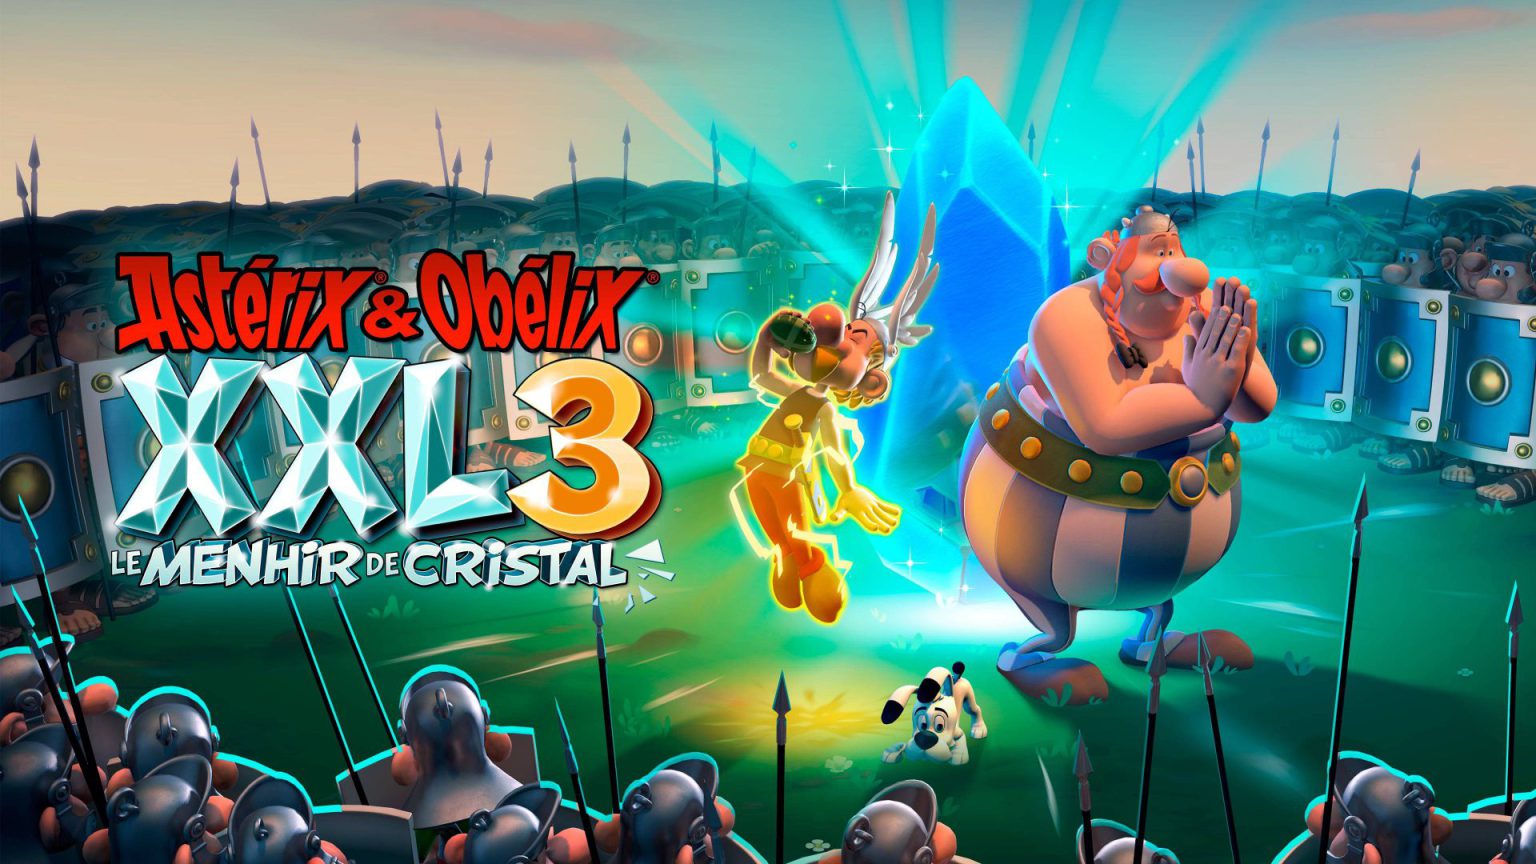 Astérix y Obélix XXL3: El Menhir de Cristal,